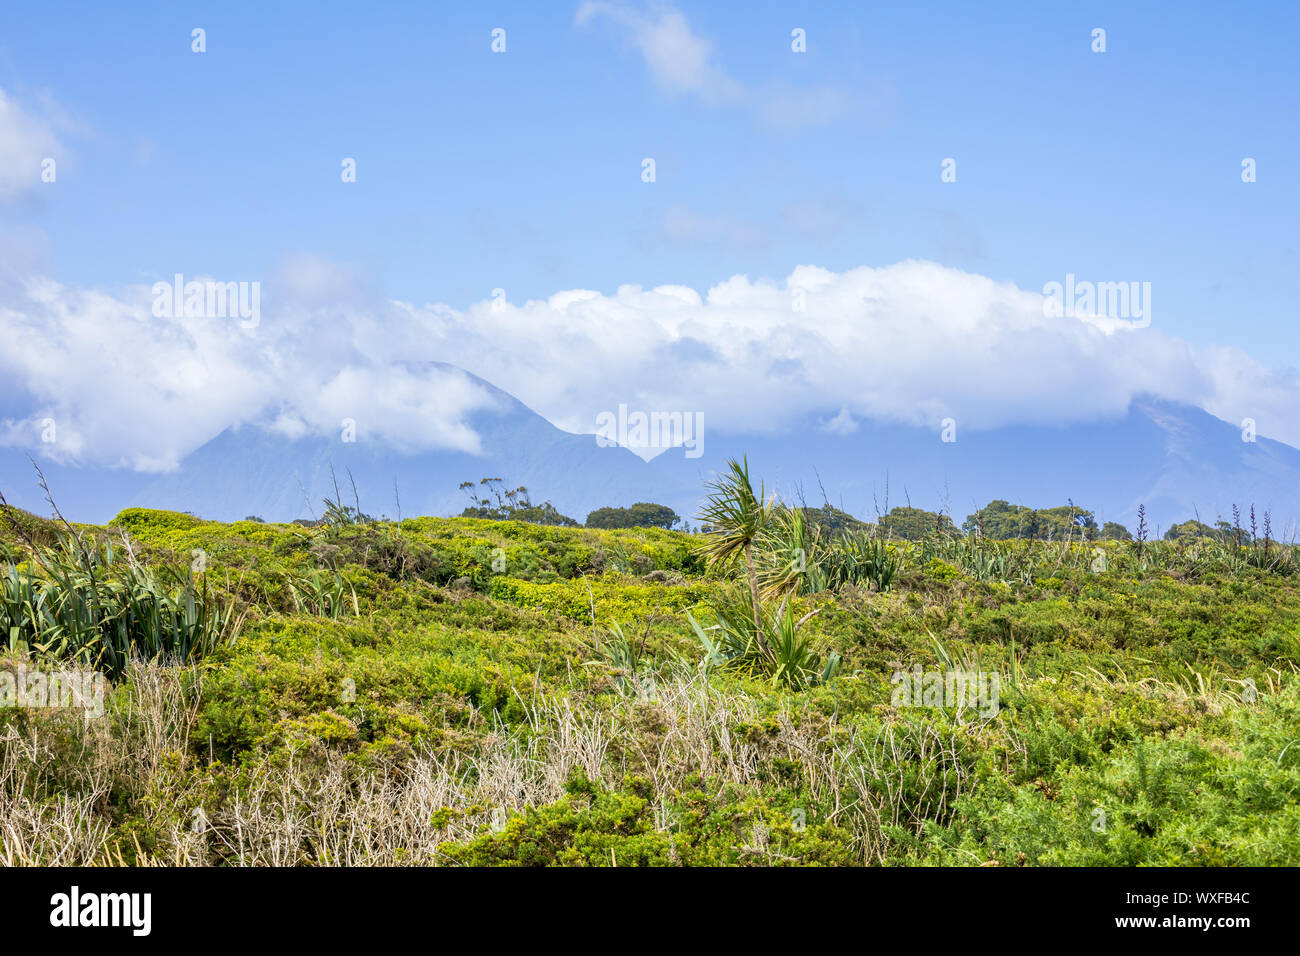 Paysage paysage dans le sud de la Nouvelle Zélande Banque D'Images